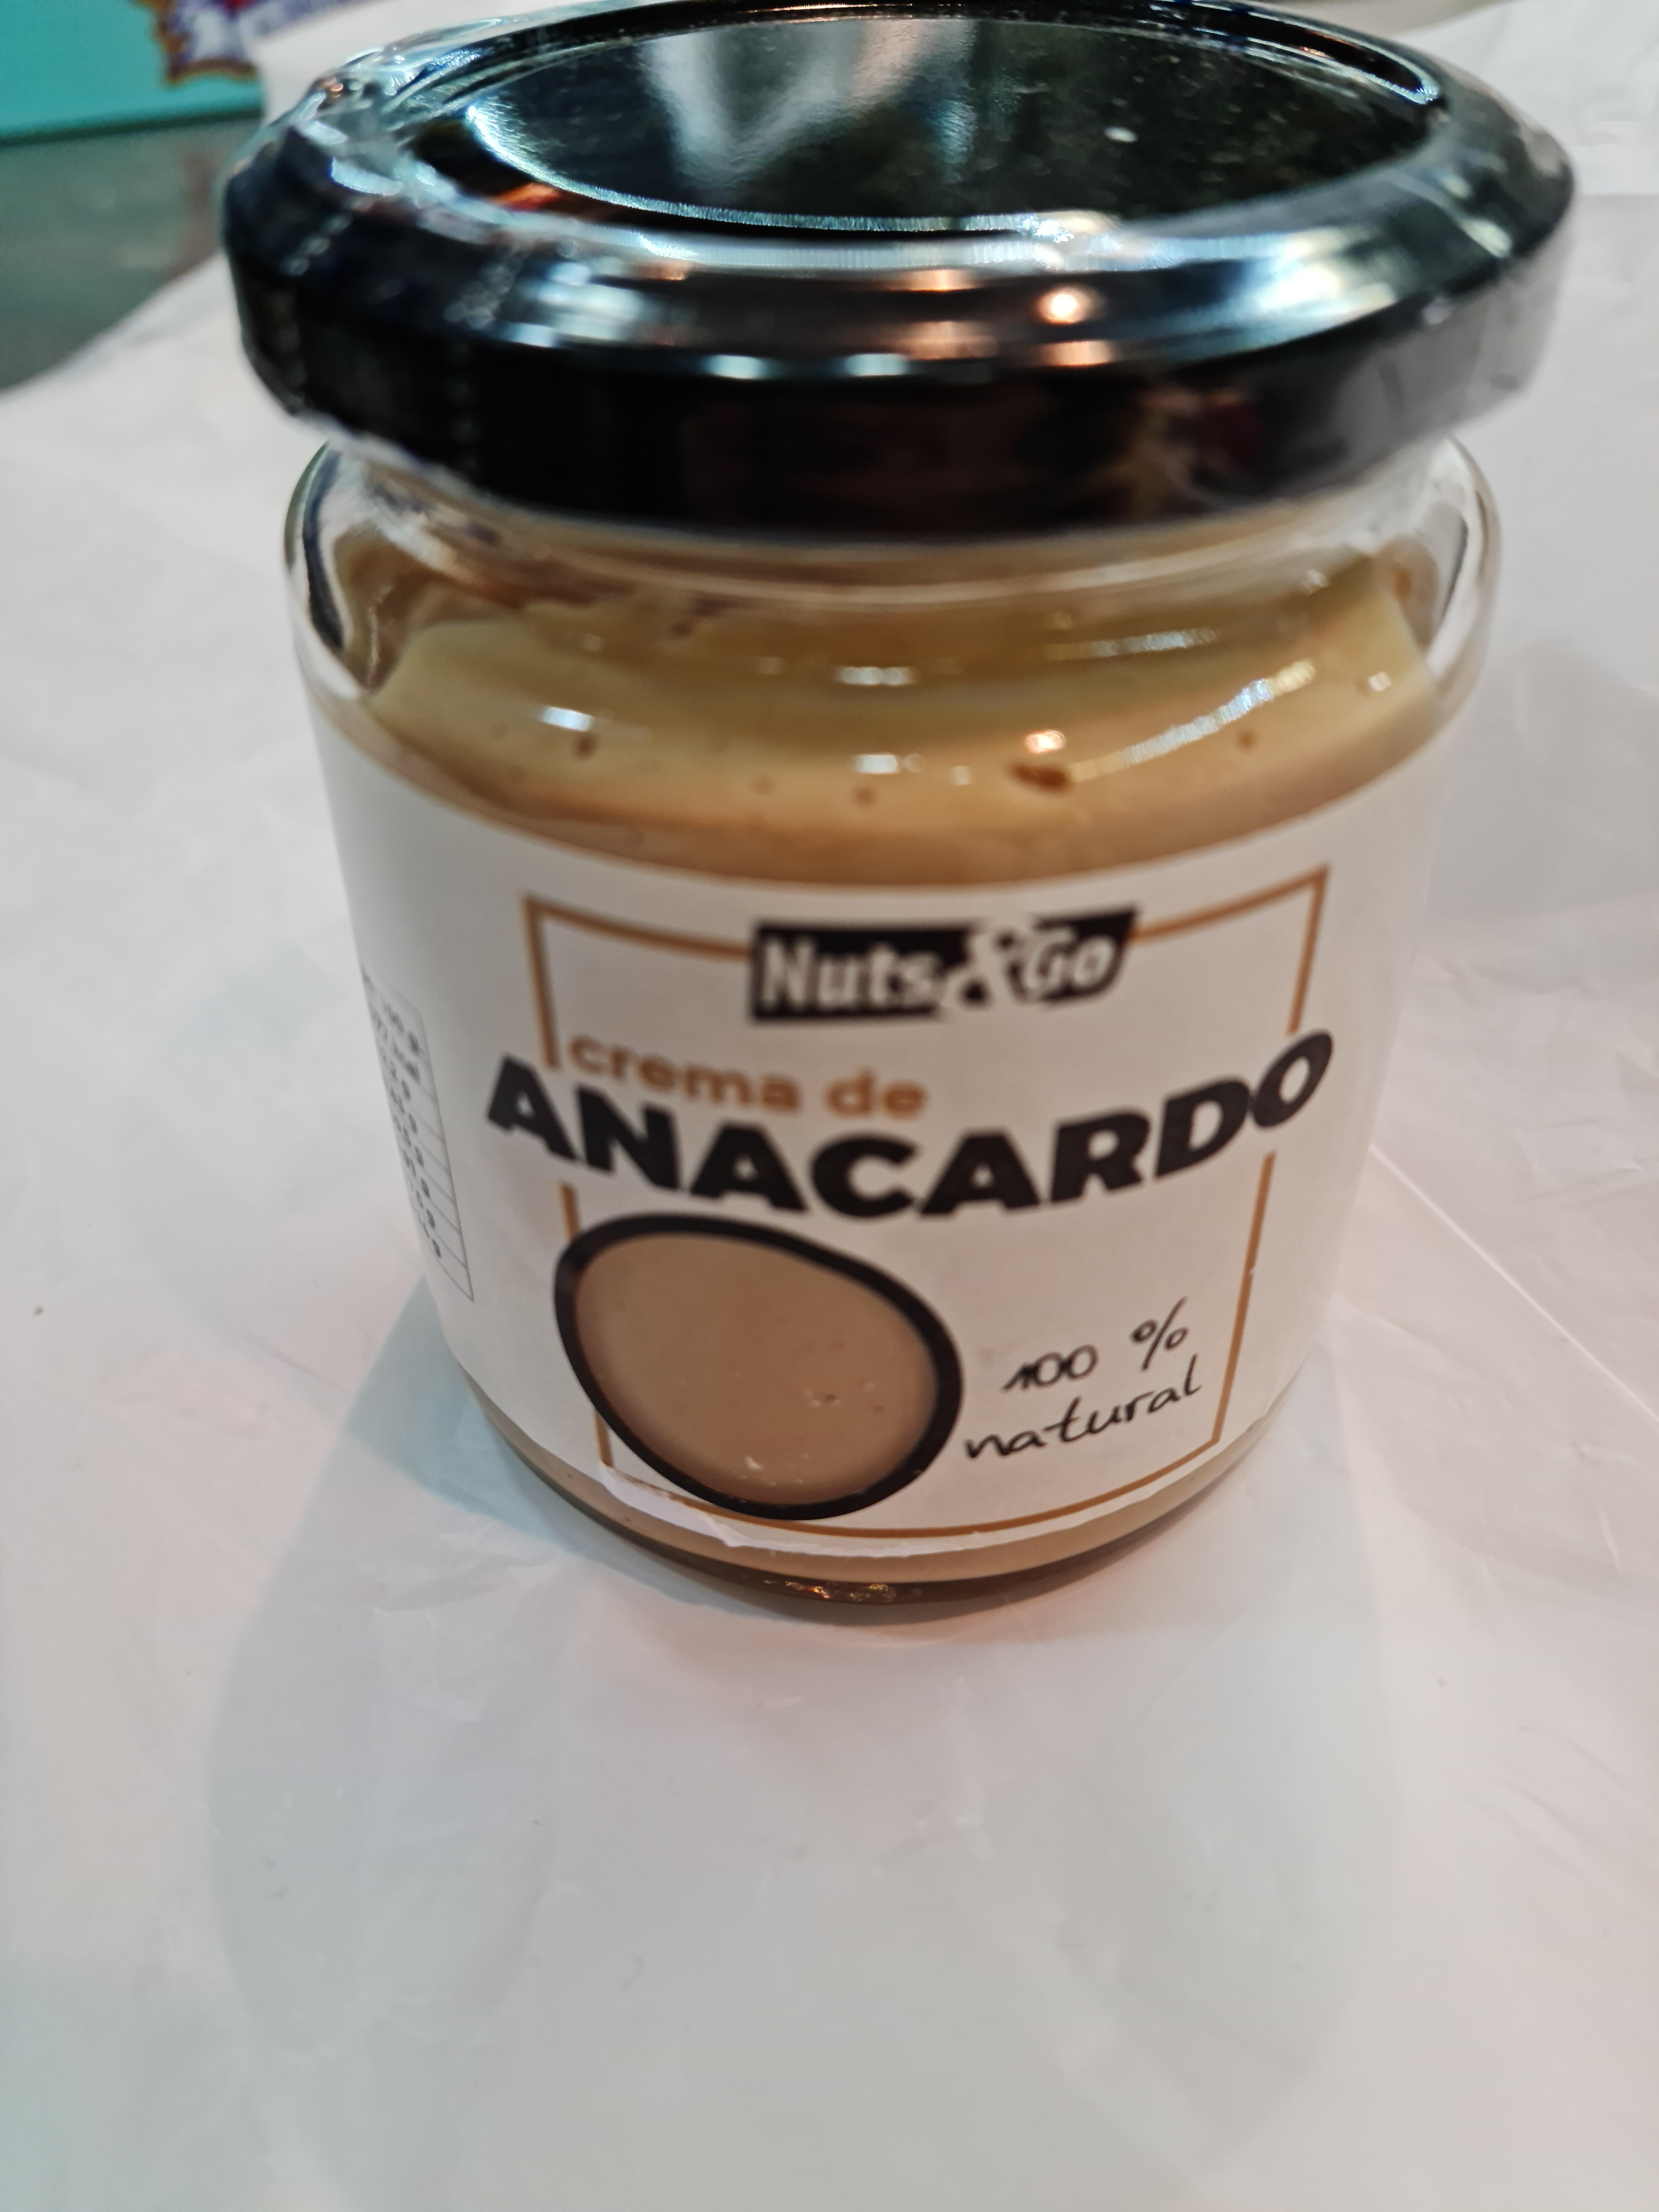 Nuts&go - Crema de anacardo